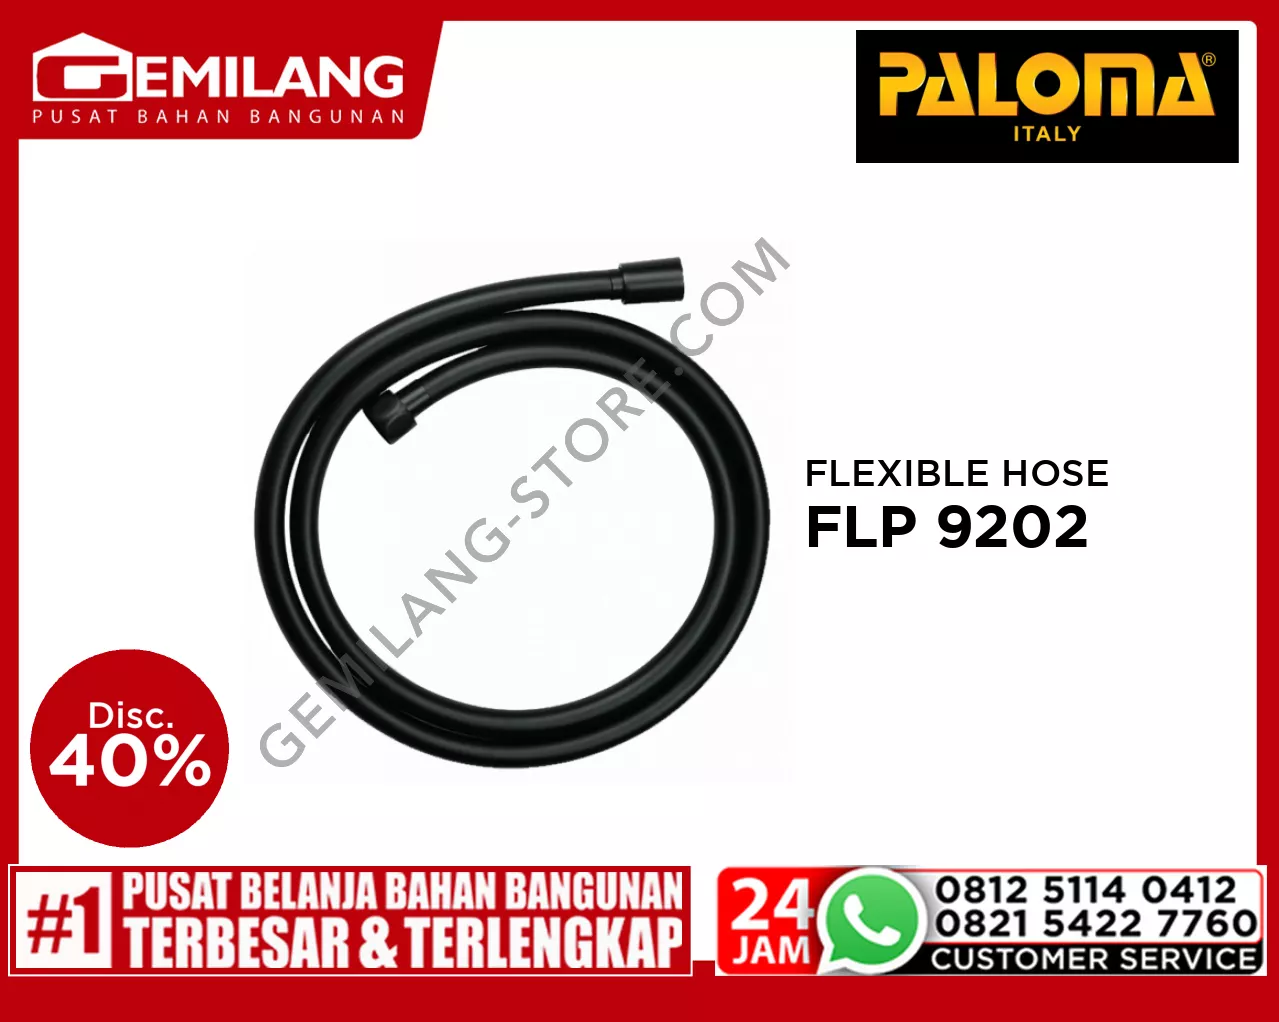 PALOMA PVC FLEXIBLE HOSE FINISH MATTE BLACK FLP 9202